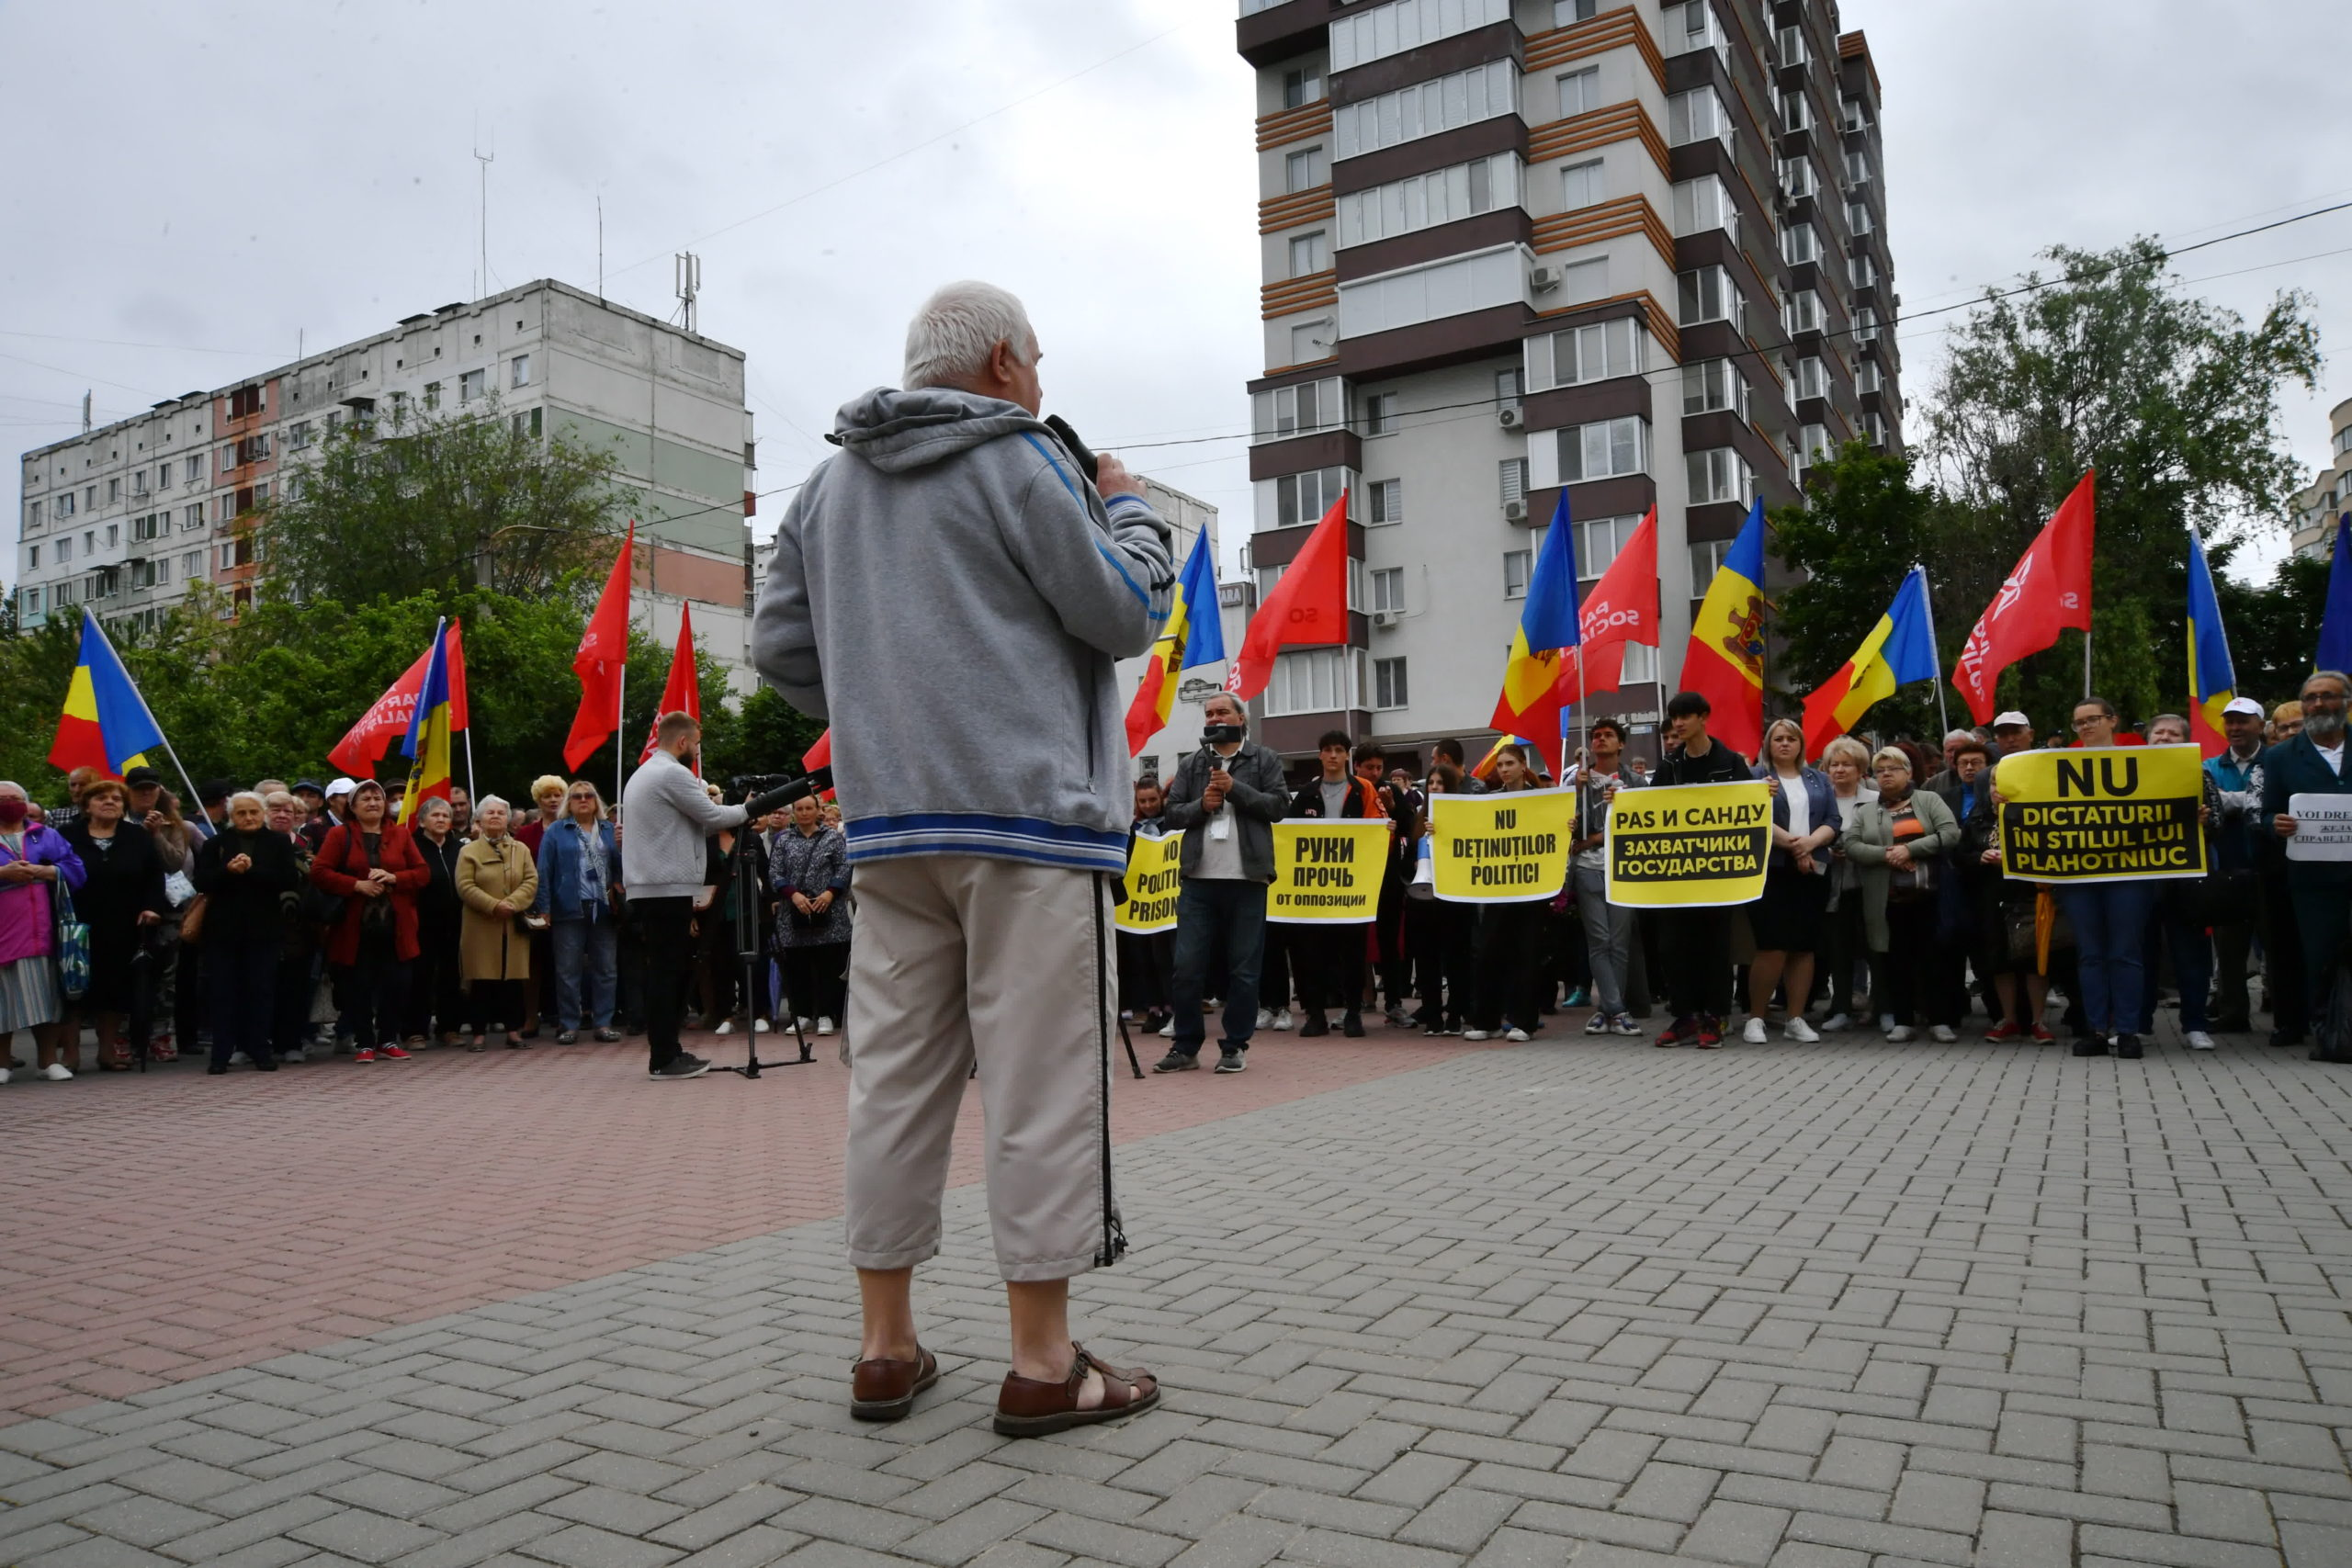 Додон, Чебан и гомофобия. Работает ли в Молдове аргумент «во всем виноваты ЛГБТ»